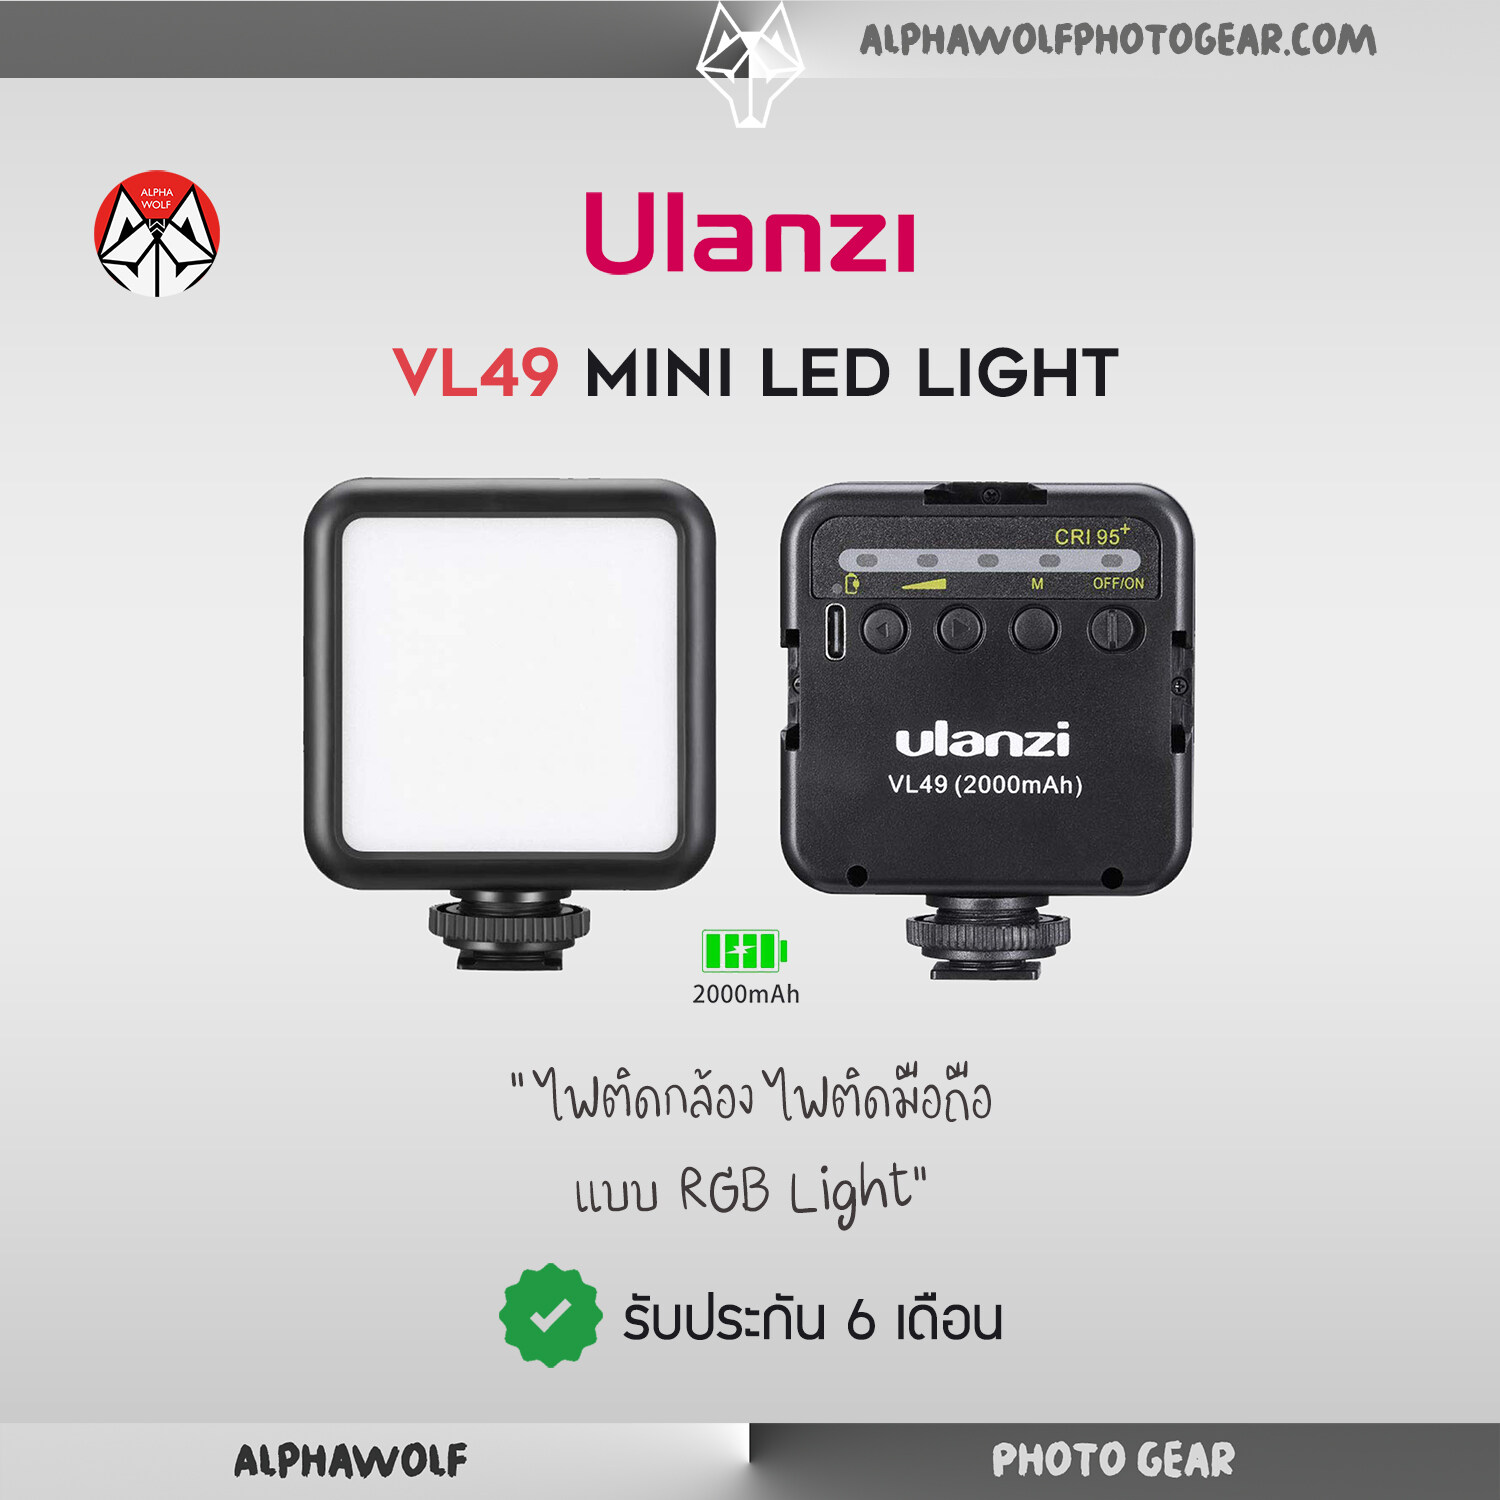 Ulanzi VL49 Mini LED Light ไฟต่อกล้อง ไฟติดมือถือ ขนาดพกพา แสงสีขาว 5500K ความสว่าง 5ระดับ Built-in 2000mAh รับประกัน 6เดือน  ALPHAWOLF